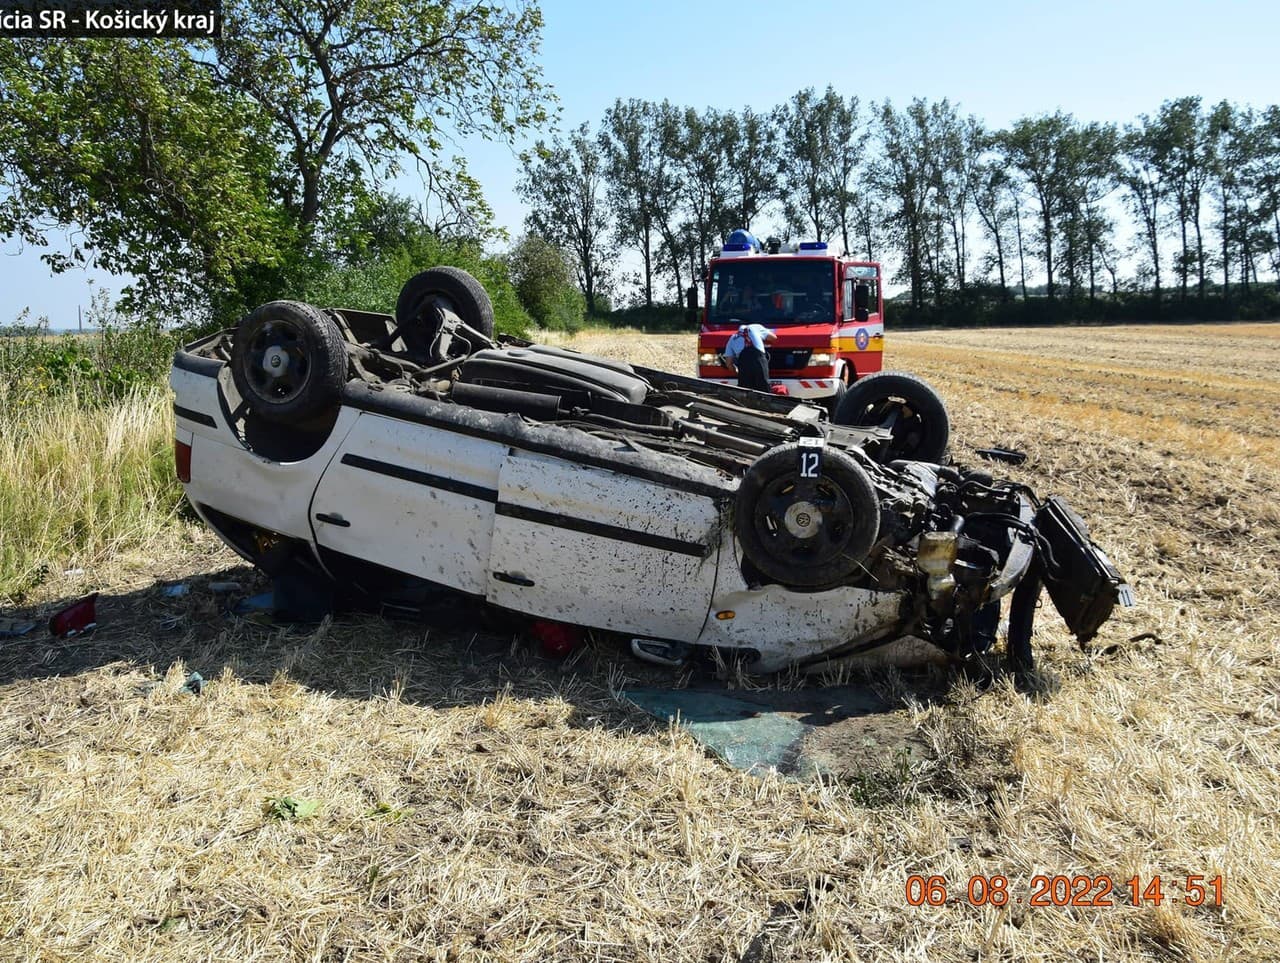 Pri havárii auta pri Sečovciach sa ťažko zranili tri osoby